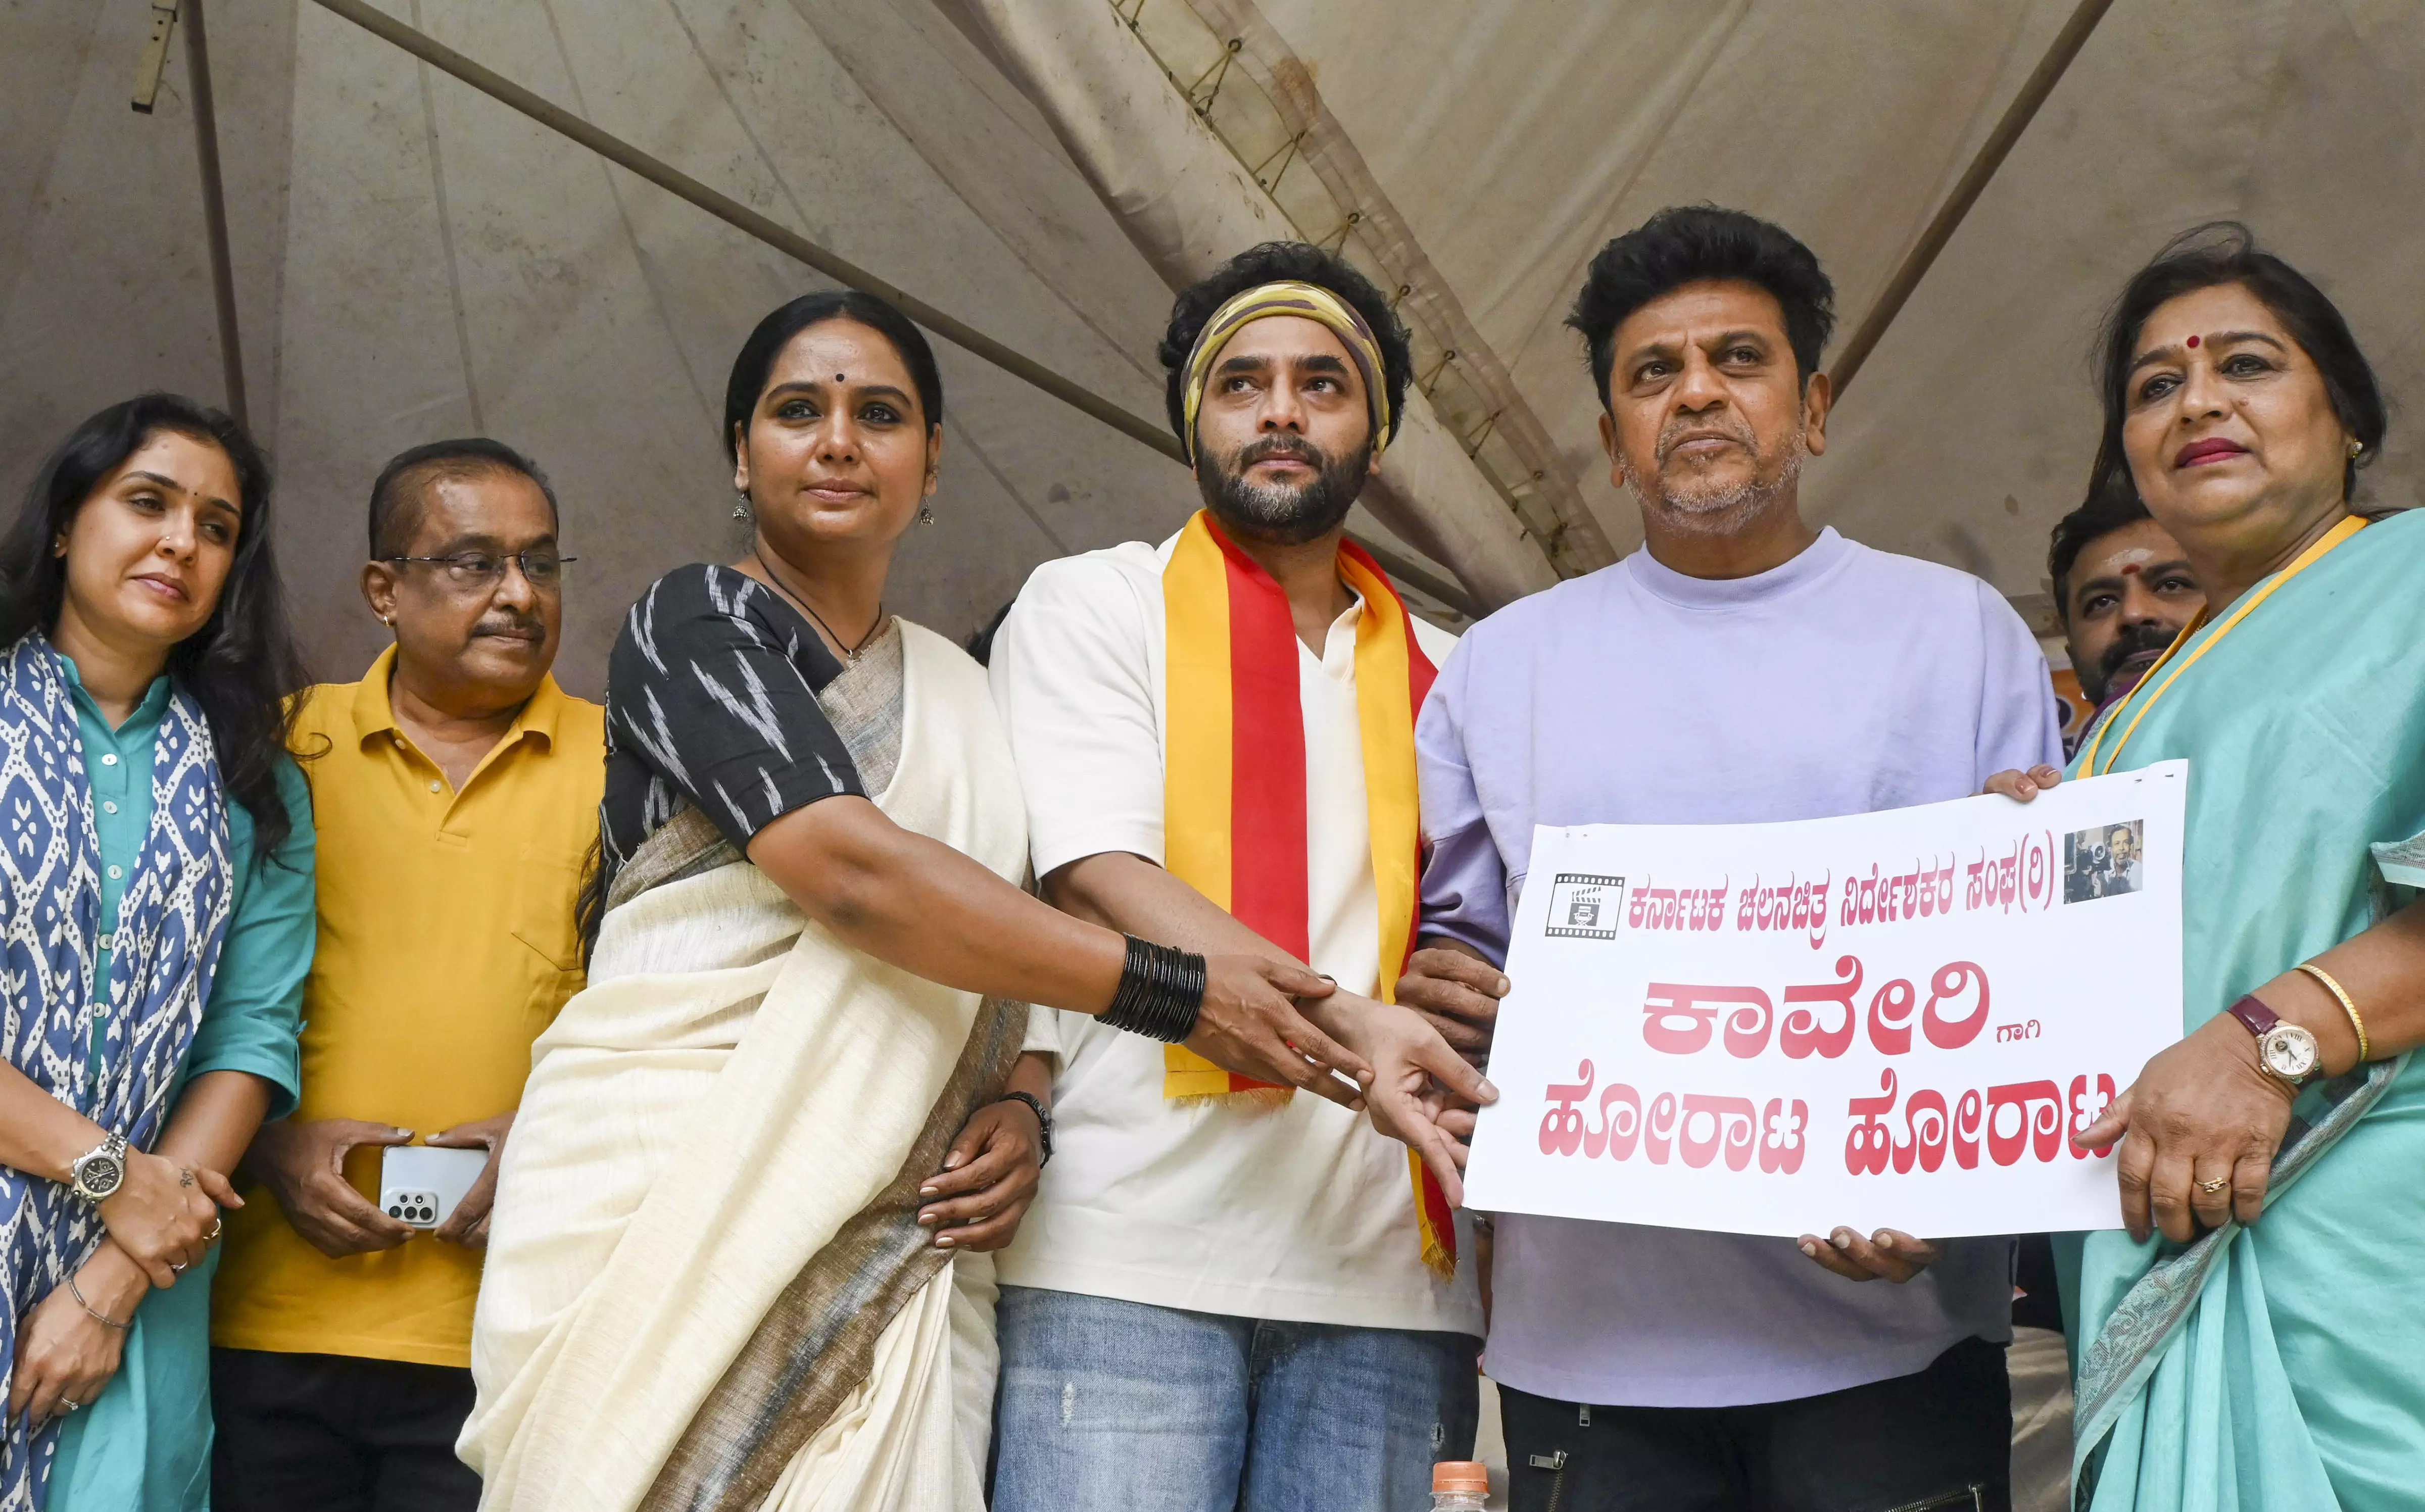 Shivarajkumar, Cauvery water issue, Kannada Film Industry, Karnataka Bandh, Bengaluru